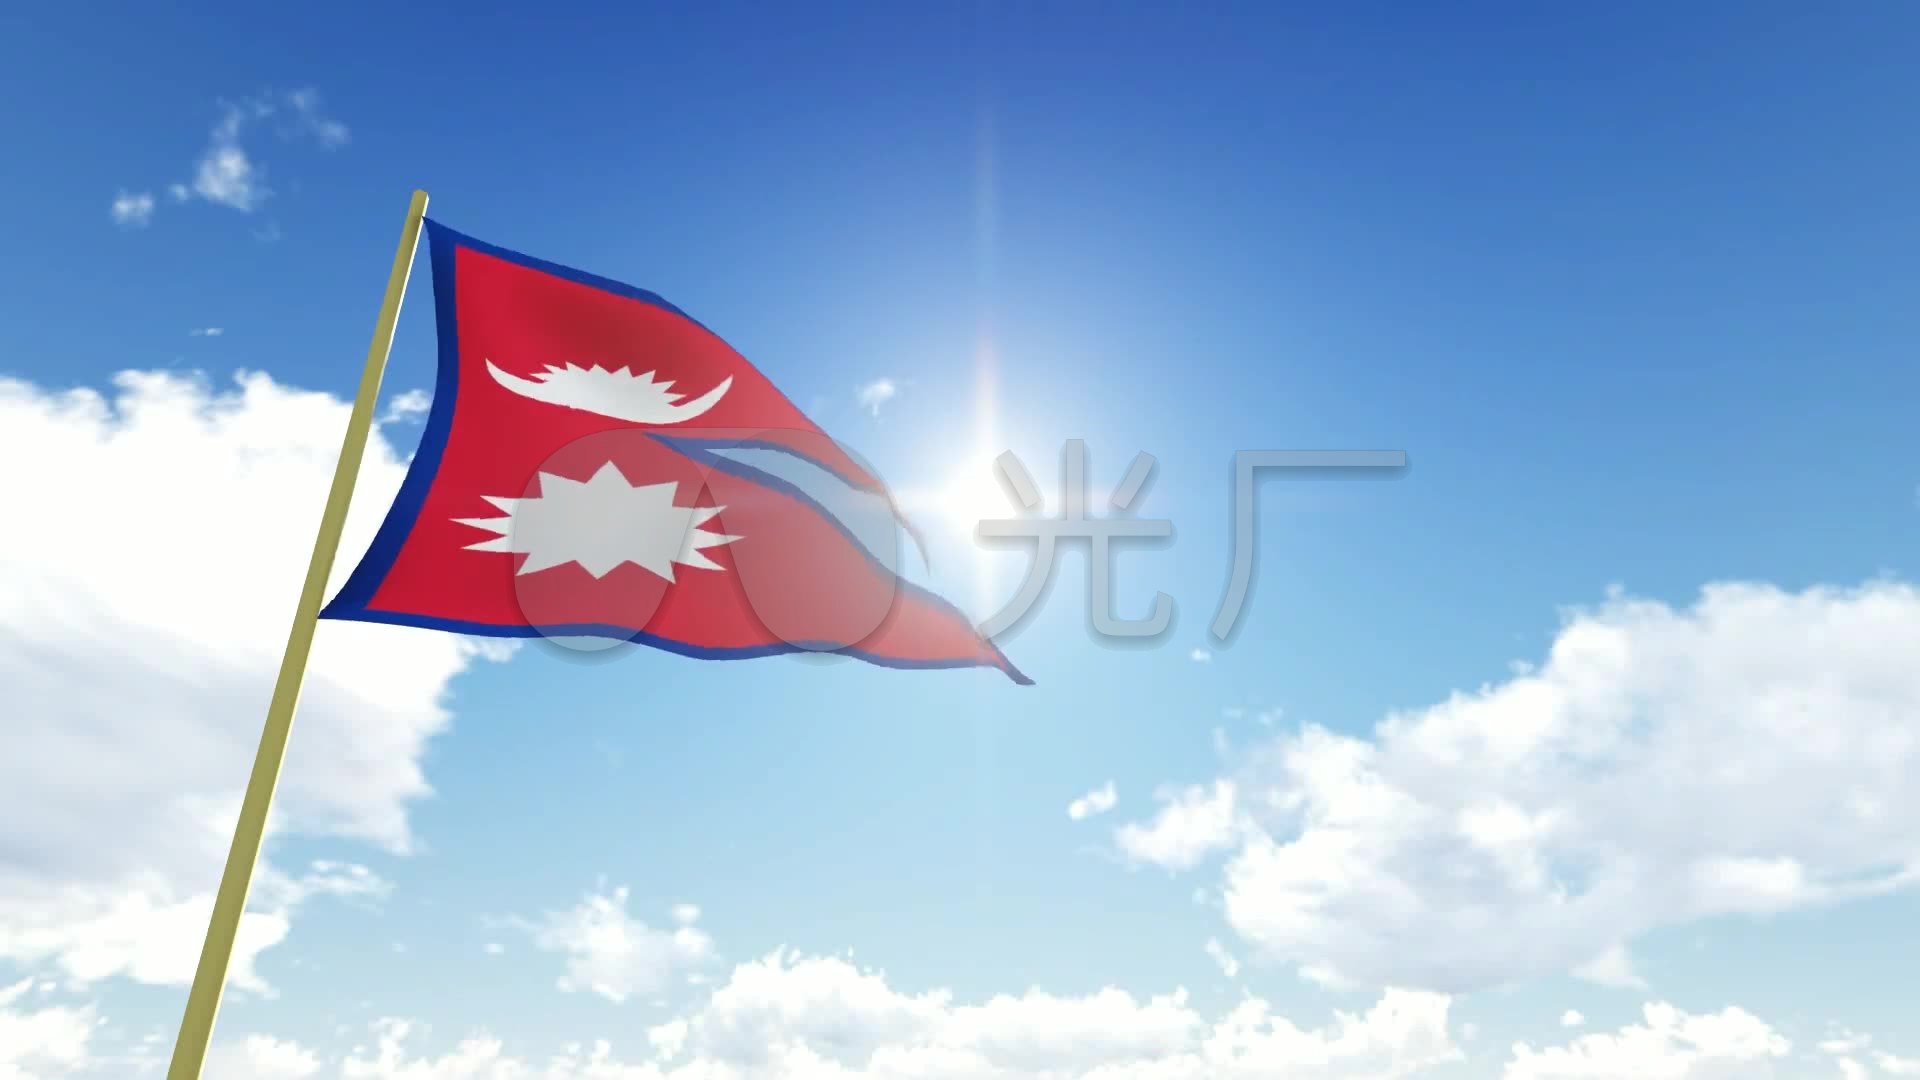 尼泊尔国旗飘扬动态背景